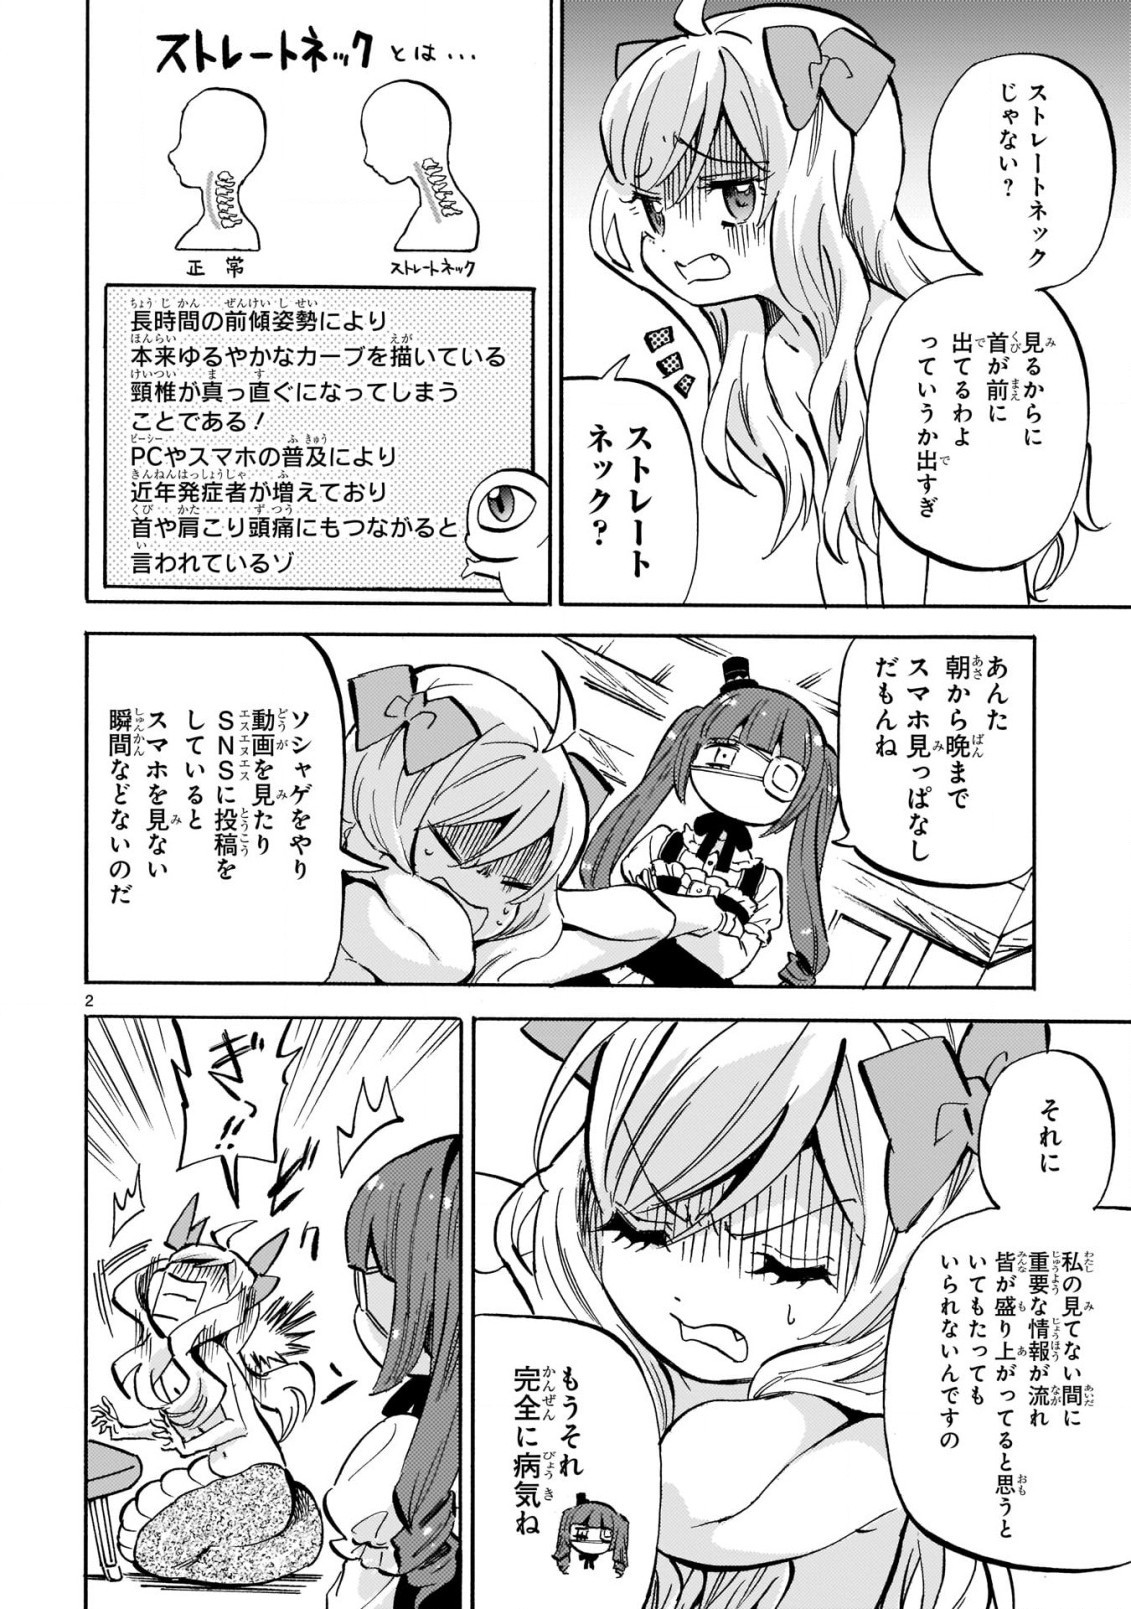 Jashin-chan Dropkick - Chapter 209 - Page 2